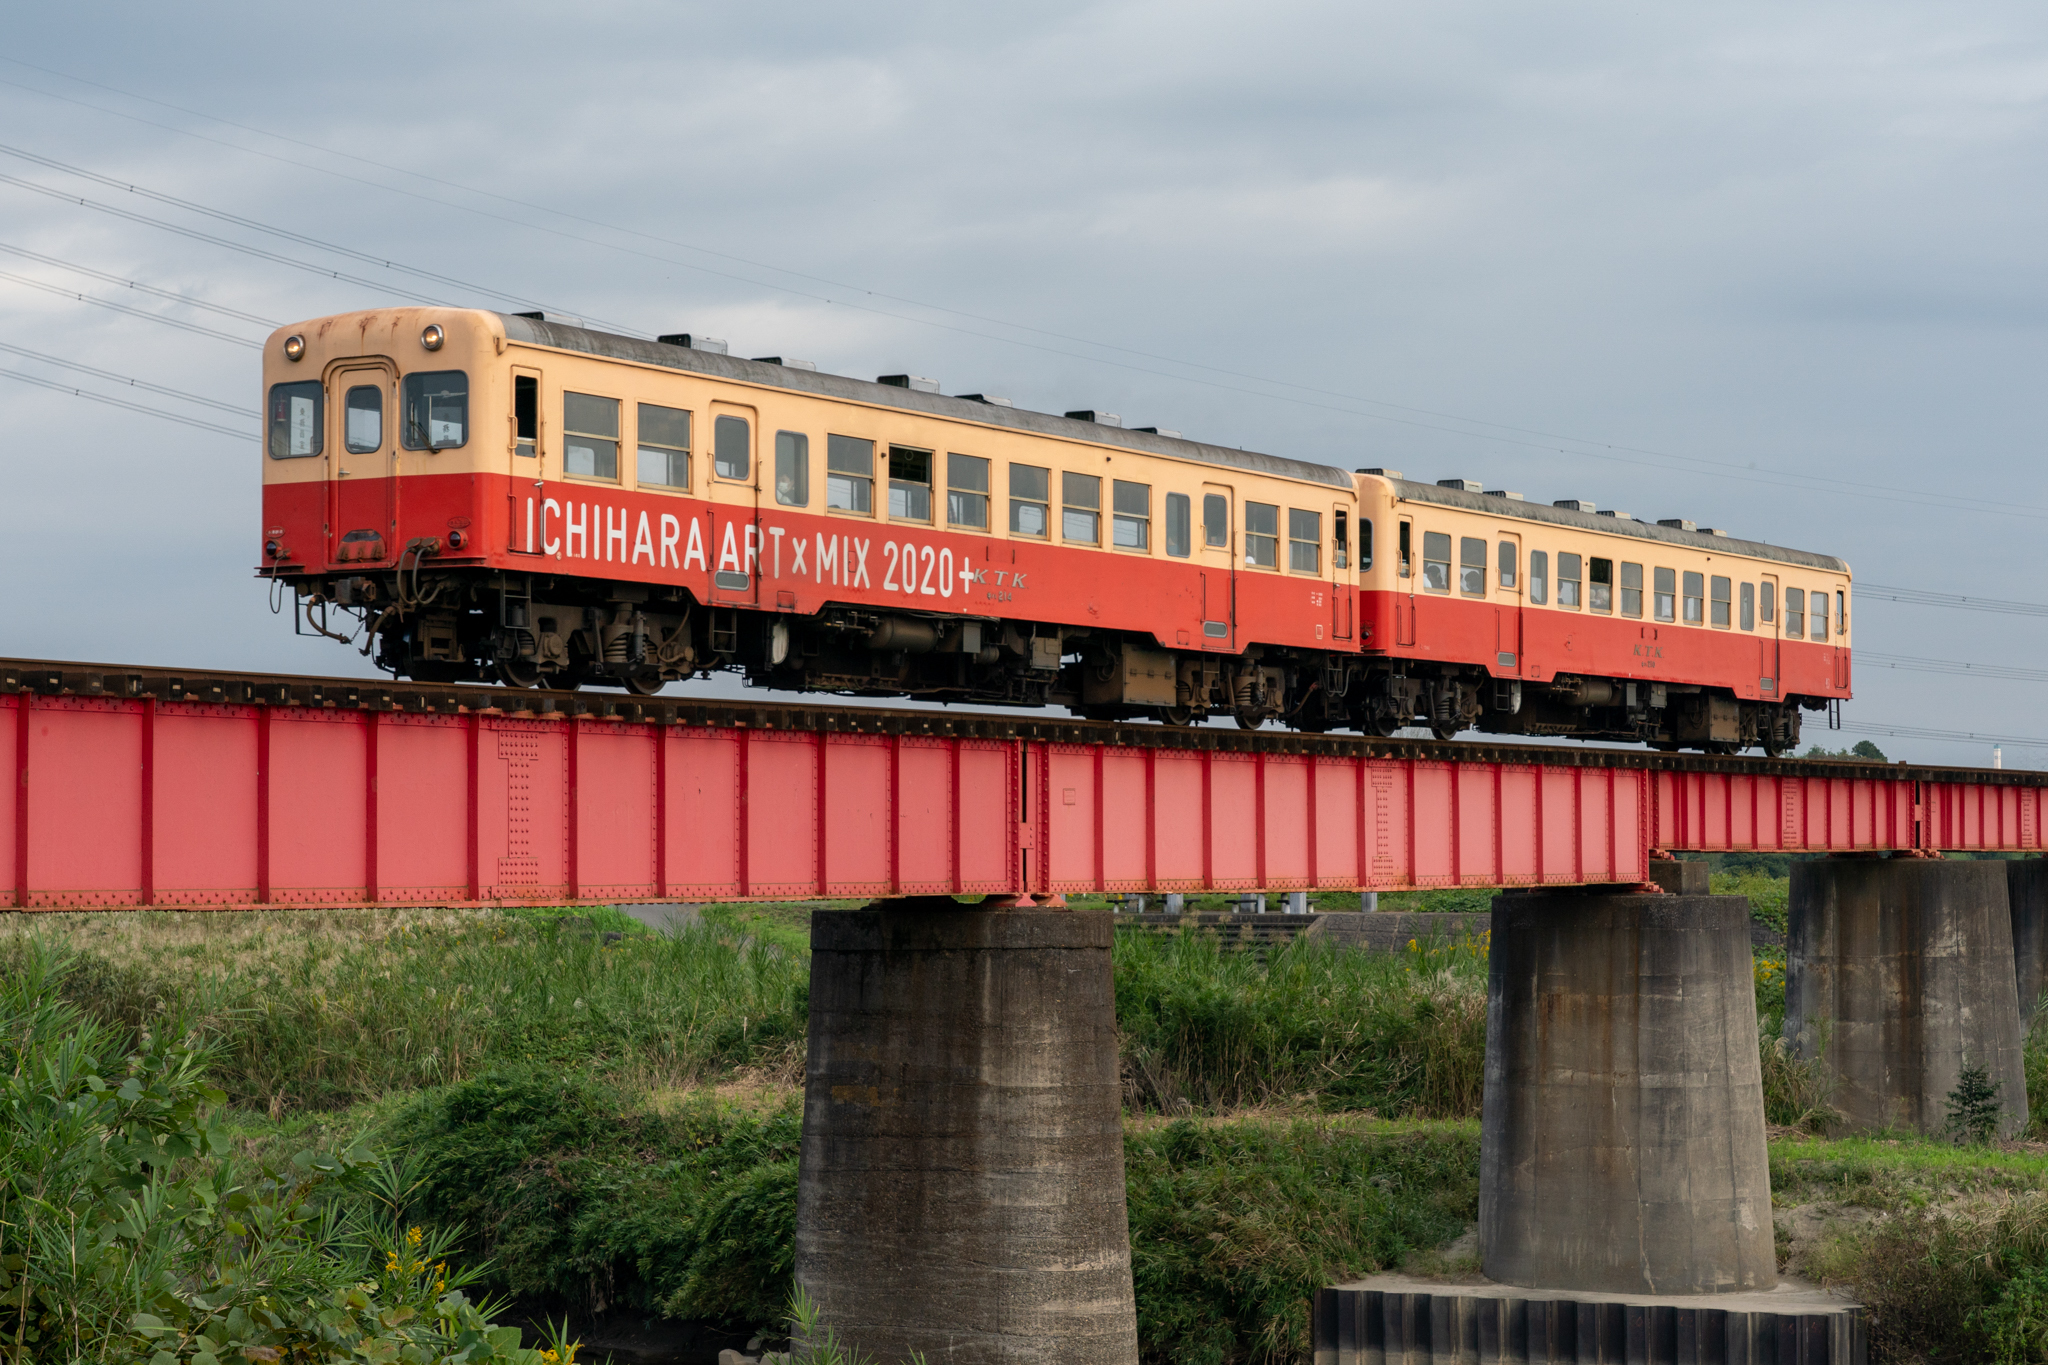 20211016_養老川鉄橋を渡るICHIHARA ART MIX 2020+のラッピング車